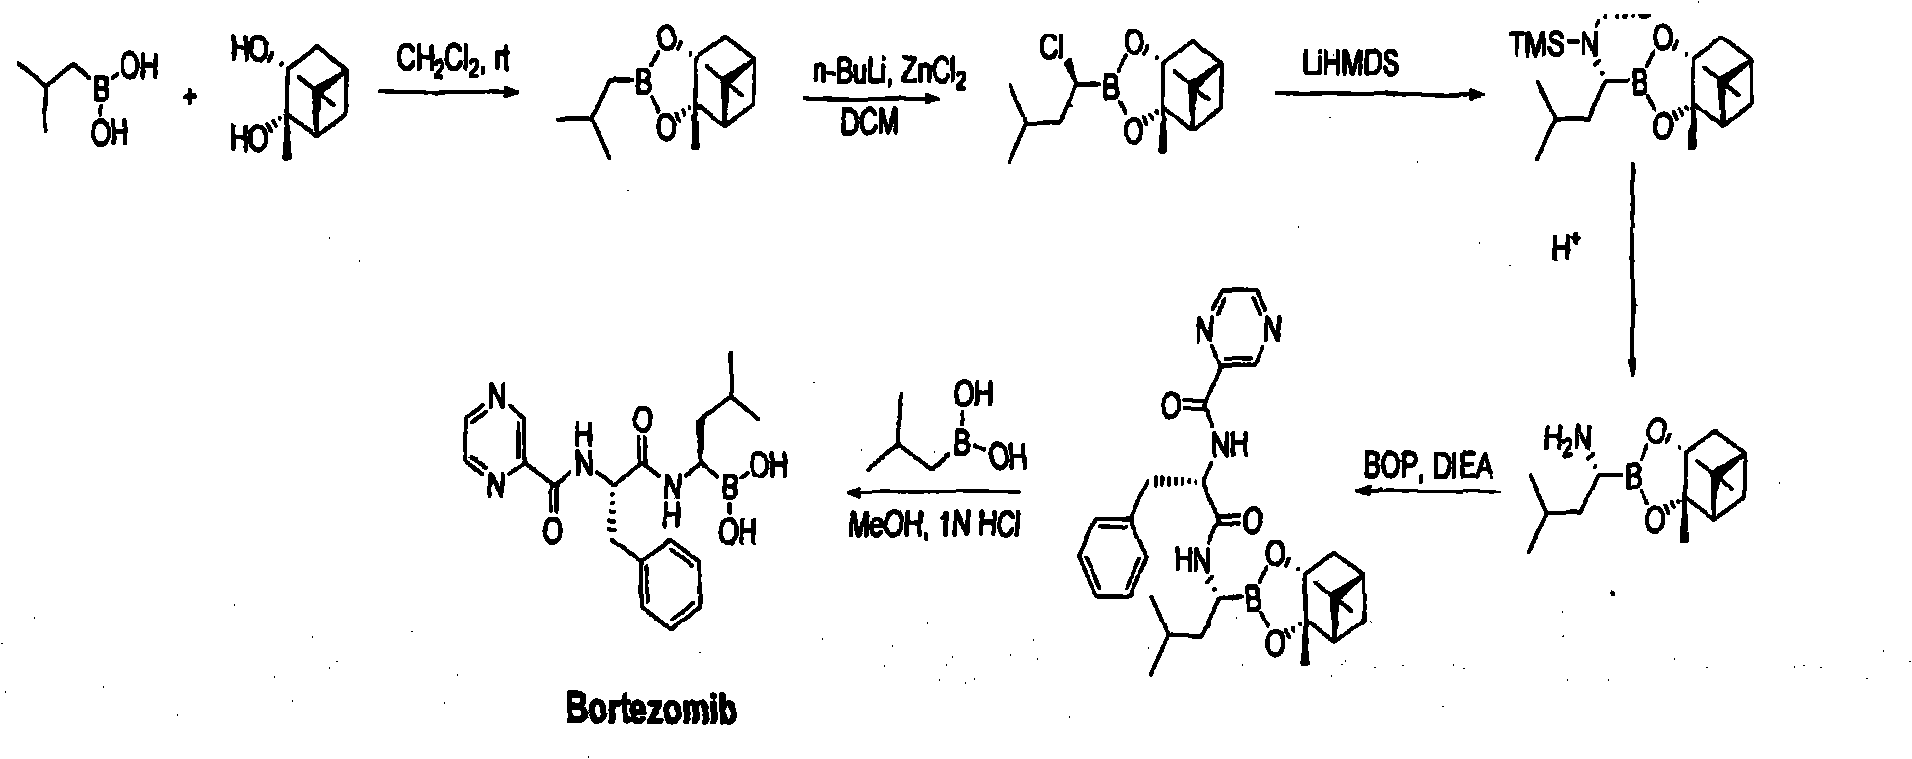 Improved method of bortezomib process